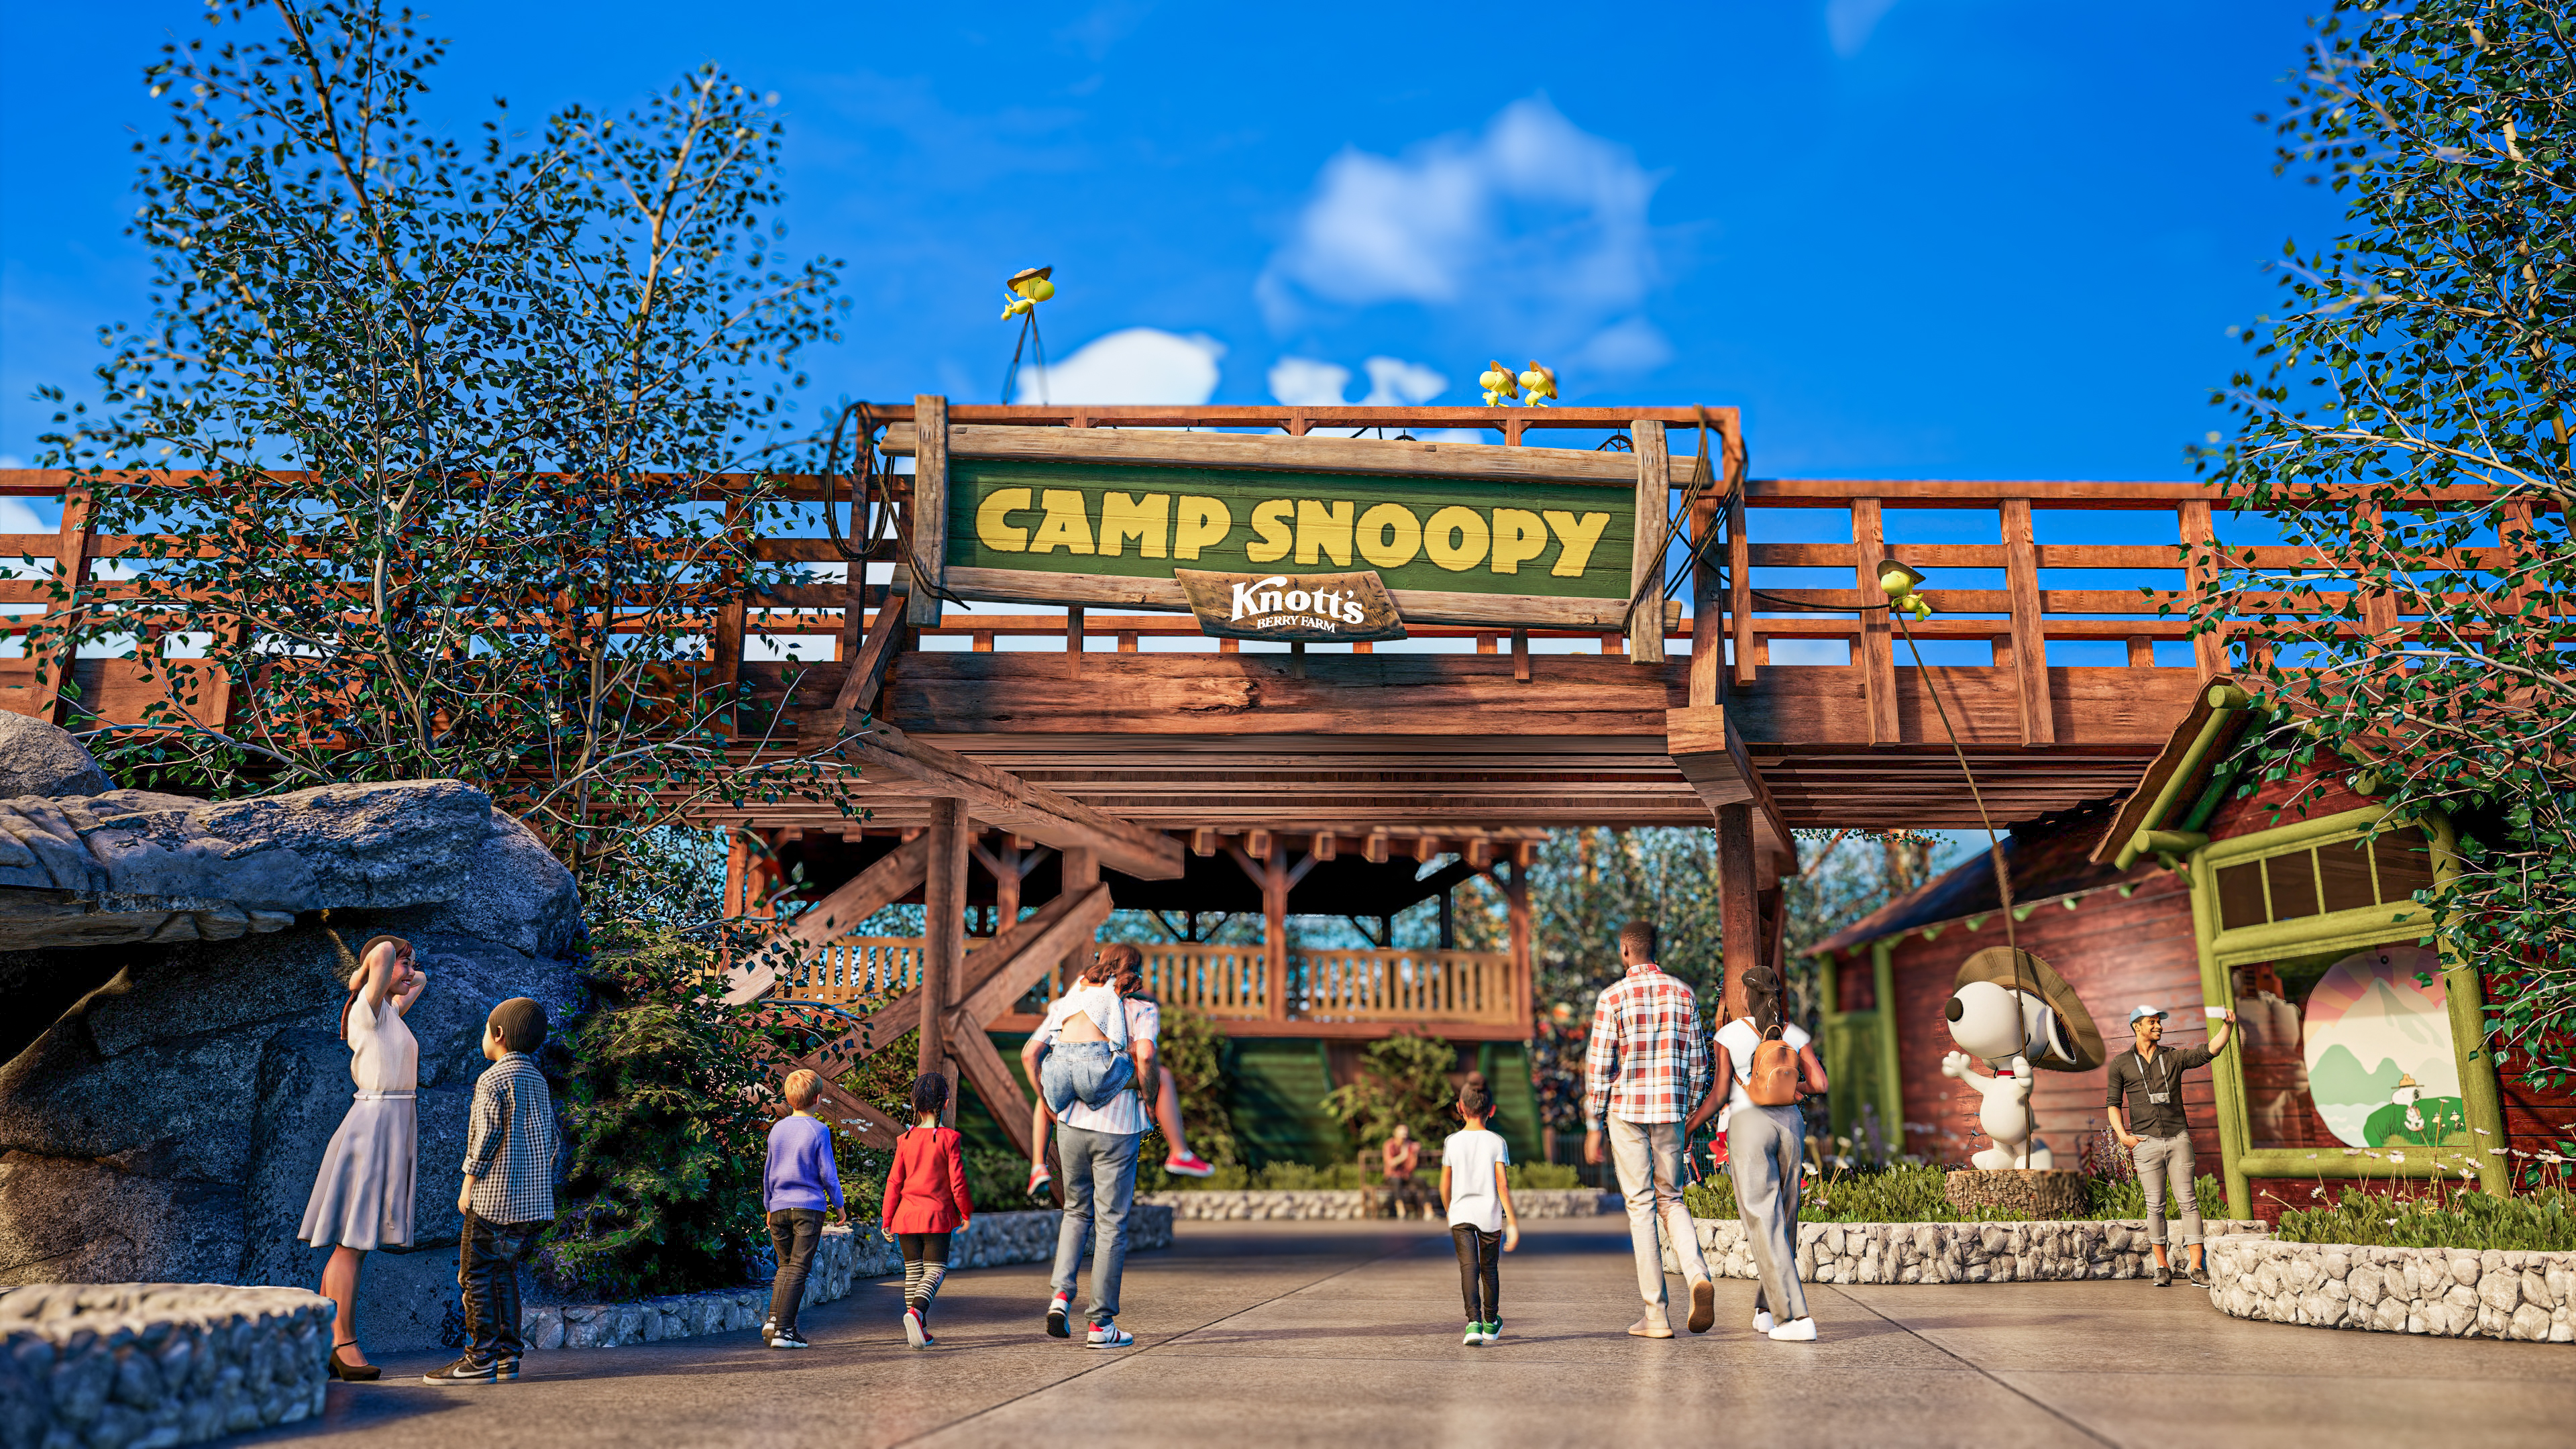 Camp Snoopy Knott's